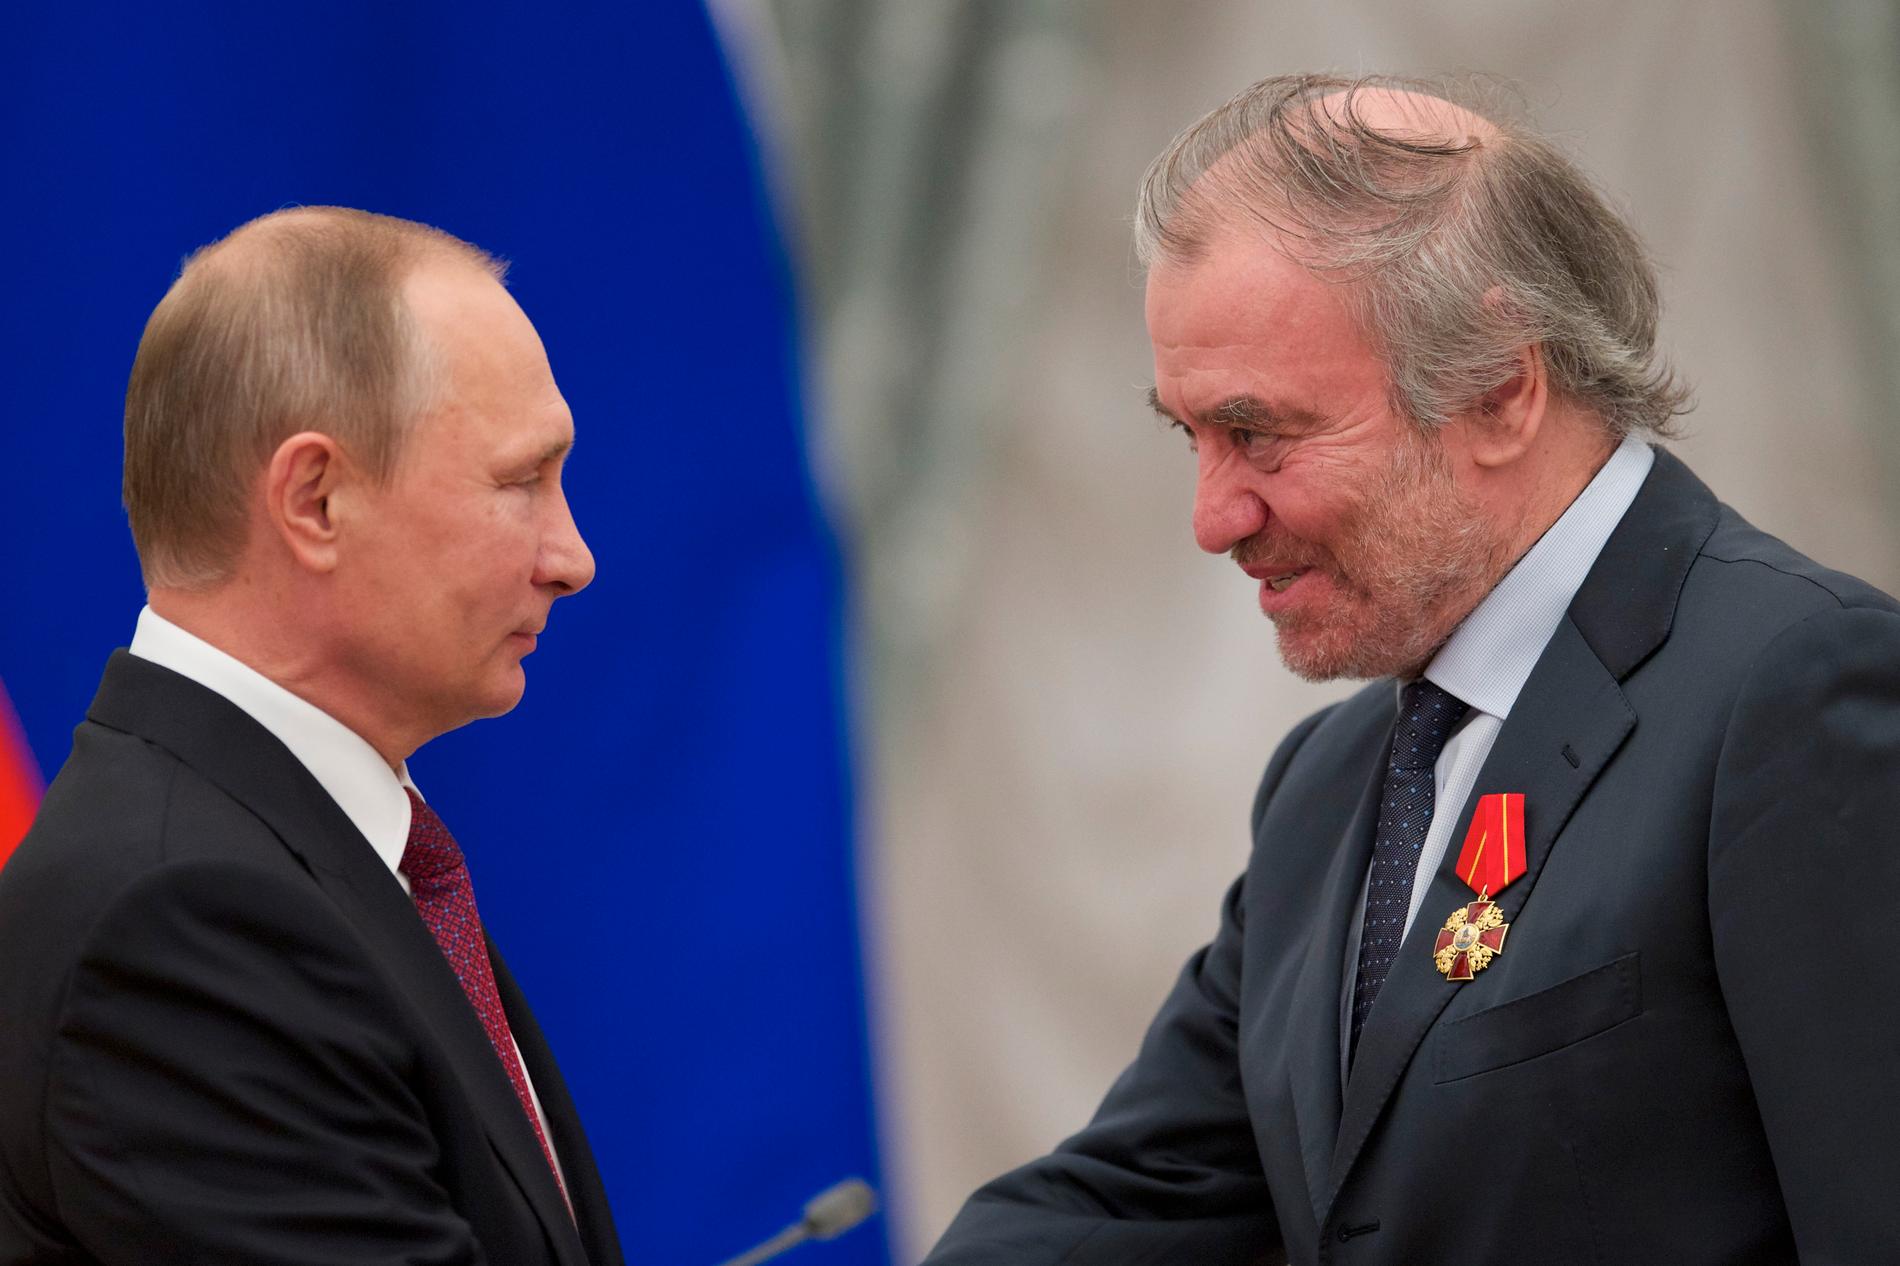 Dirigenten Valery Gergiev har nära band till den ryska regimen, enligt Kungliga Musikaliska Akademien. På bilden från 2016 tar Gergiev (till höger) emot en medalj från president Vladimir Putin.